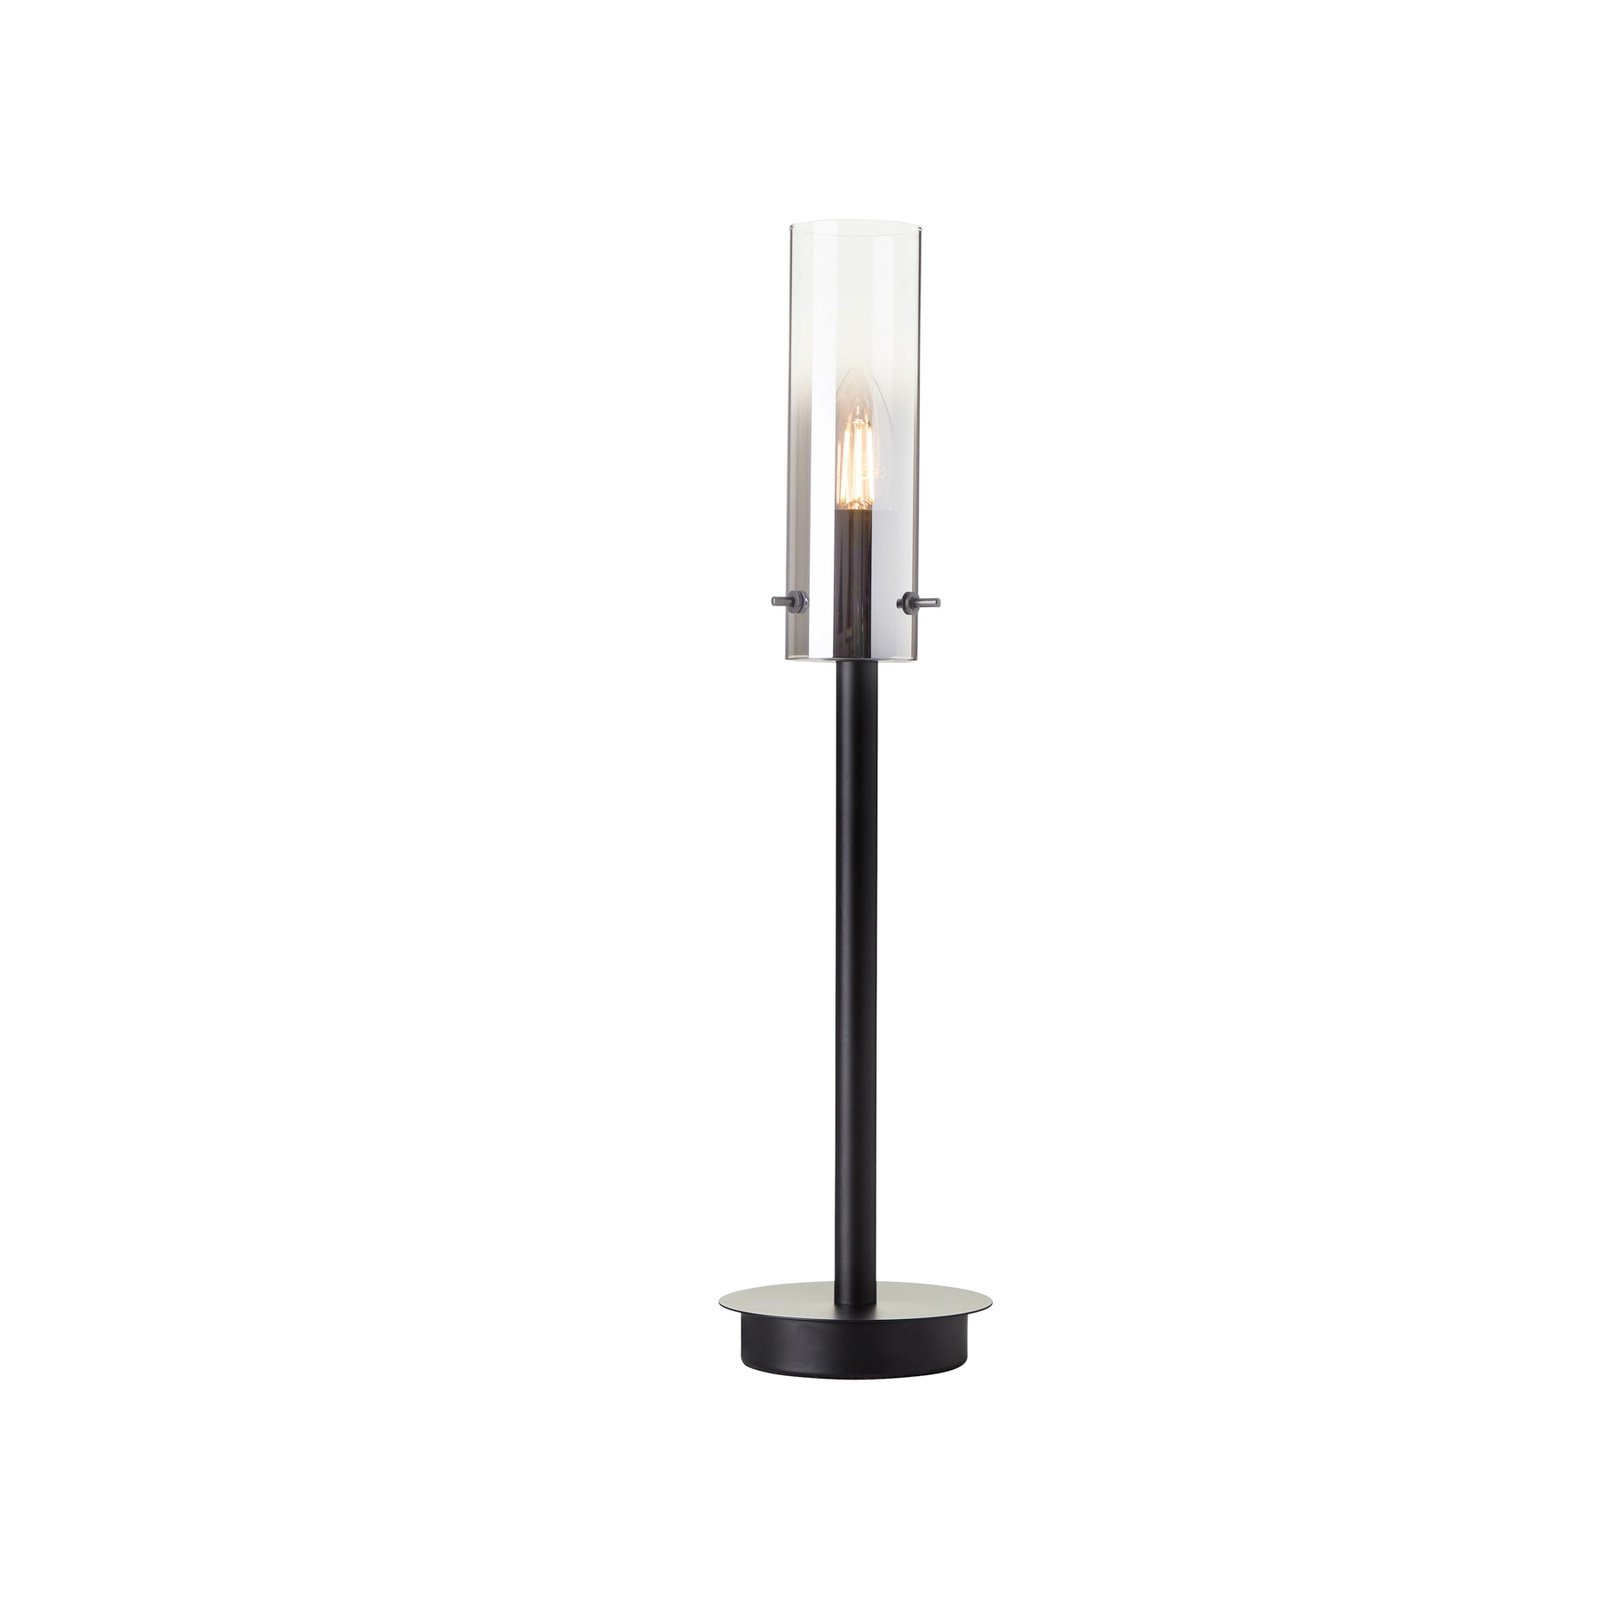 Επιτραπέζιο φωτιστικό Glasini, ύψος 49,5 cm, γκρι/μαύρο, γυαλί